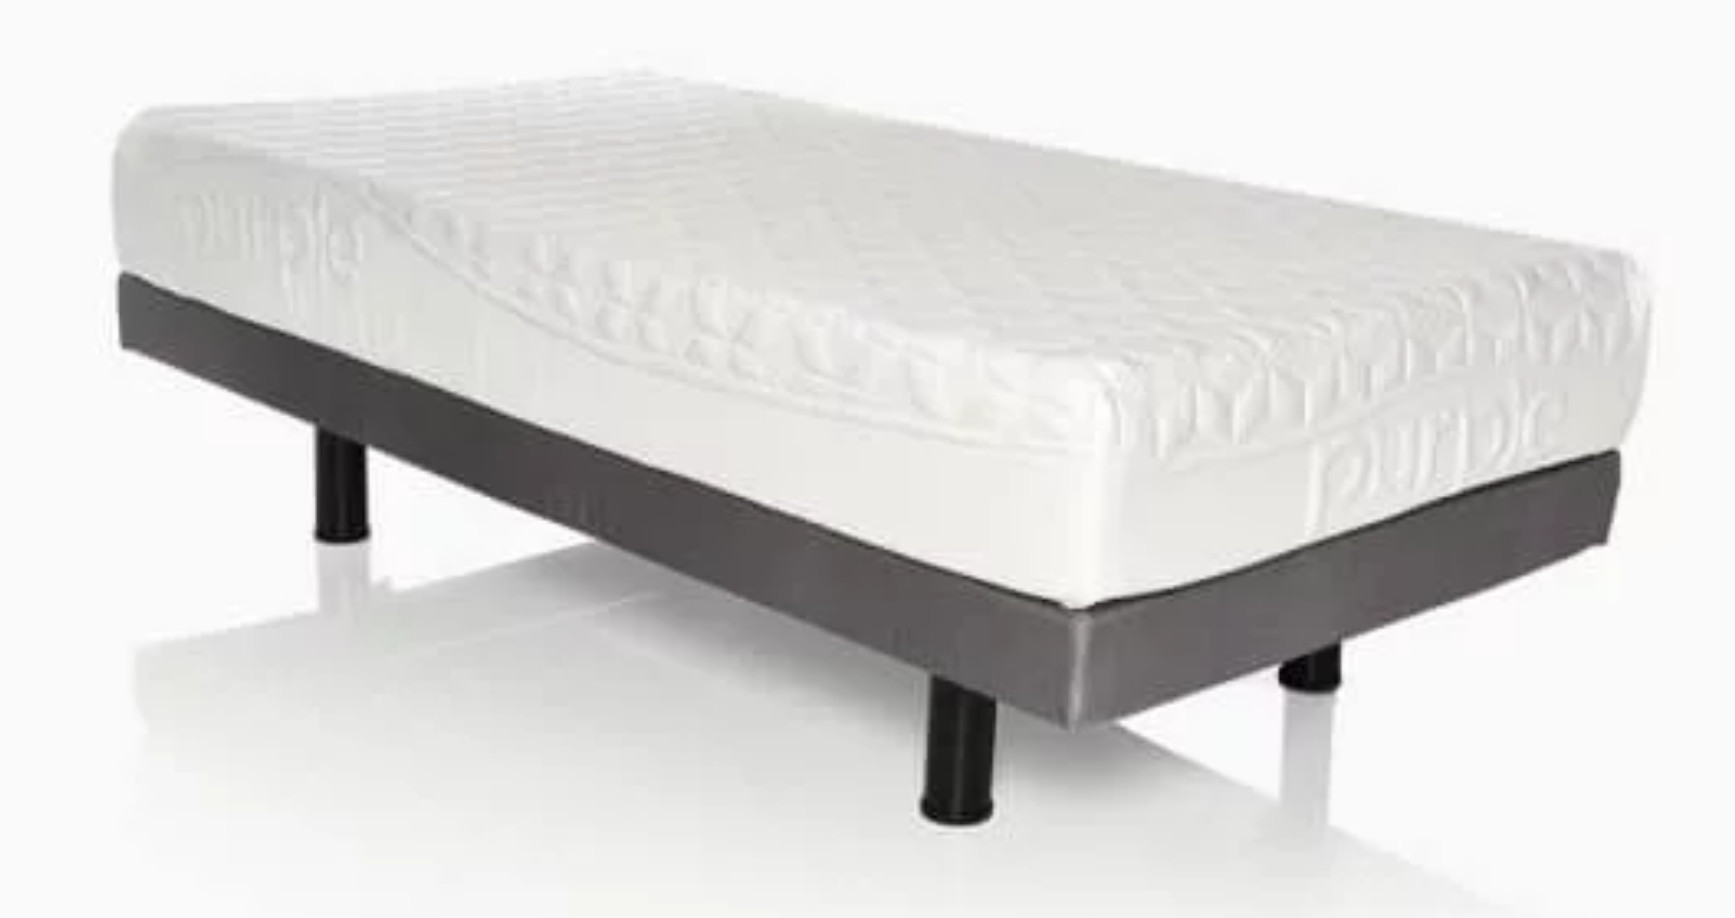 purple mattress on adjustable bed